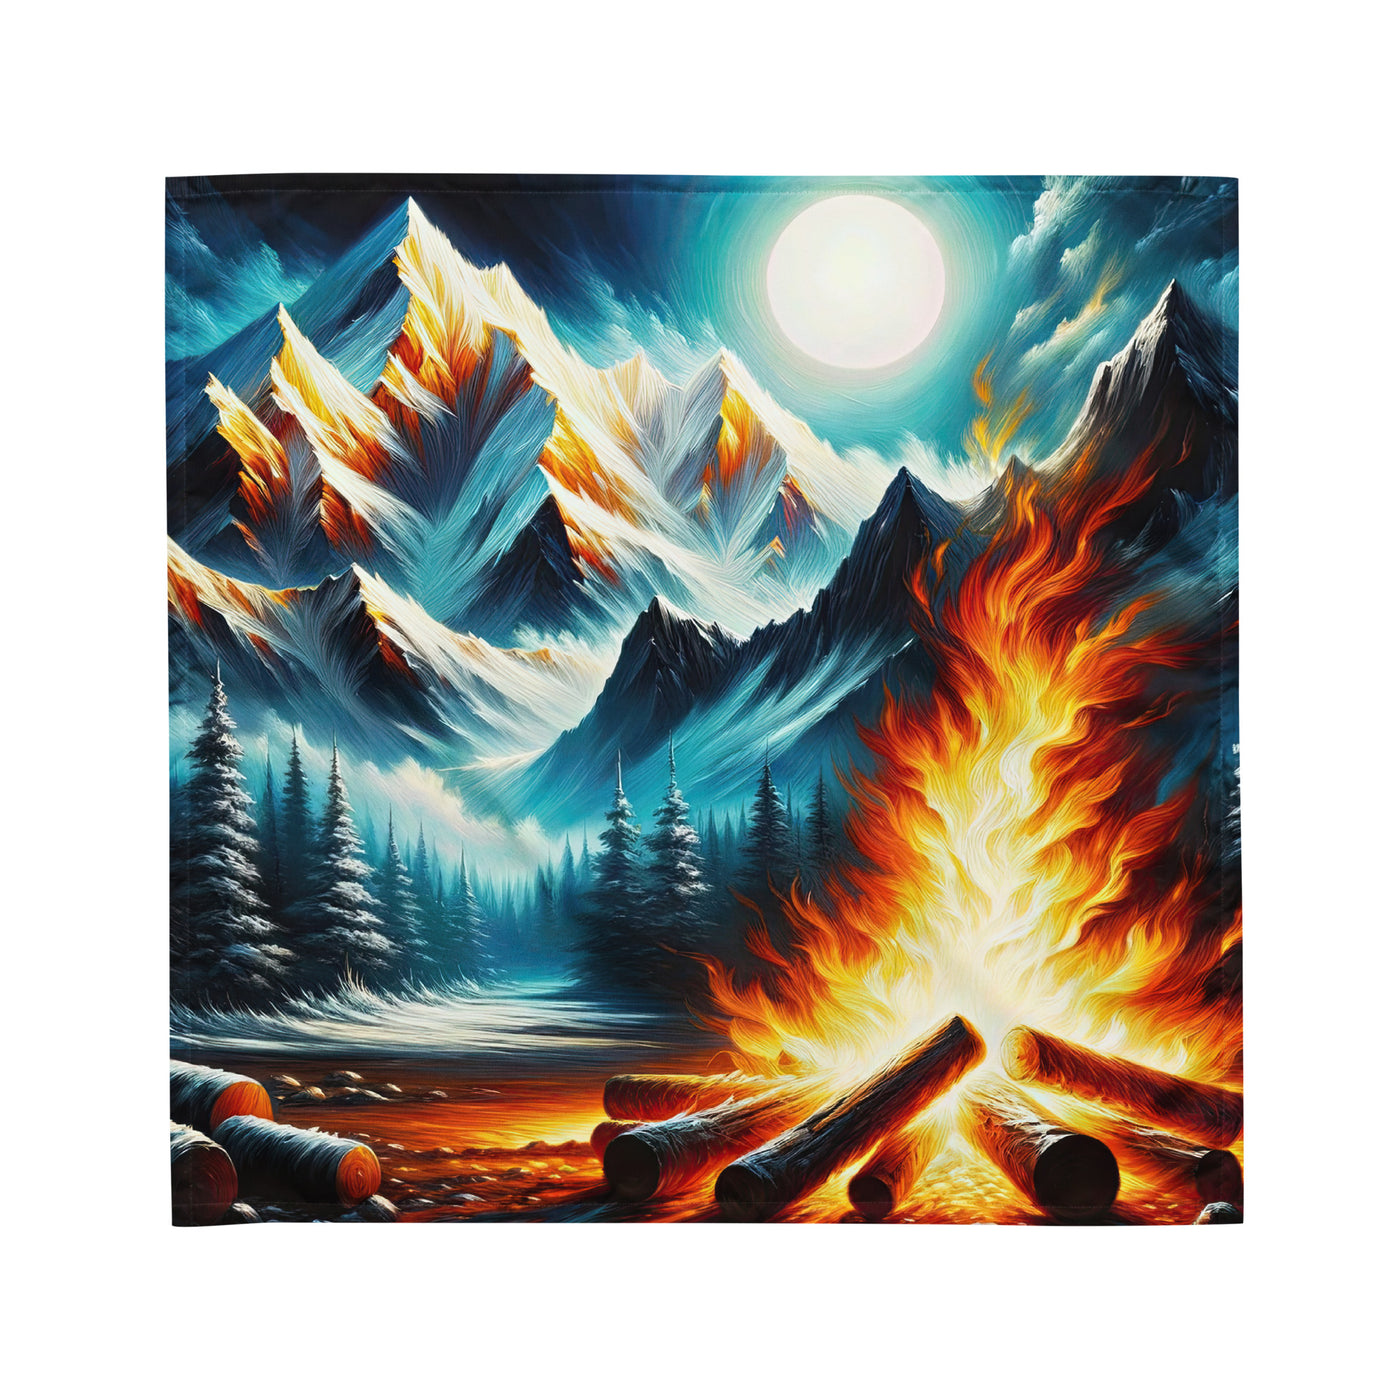 Ölgemälde von Feuer und Eis: Lagerfeuer und Alpen im Kontrast, warme Flammen - Bandana (All-Over Print) camping xxx yyy zzz M